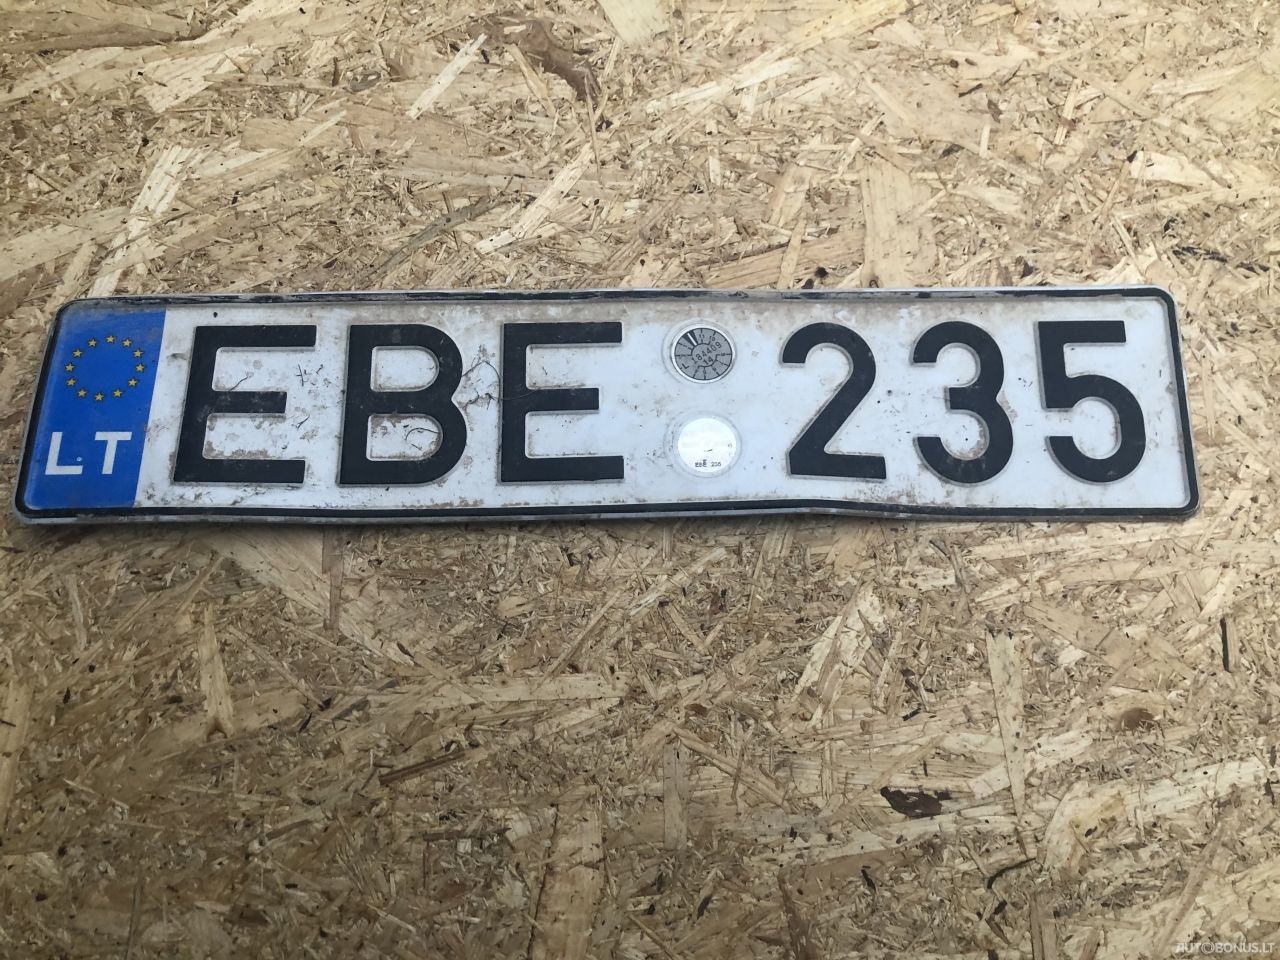  EBE235